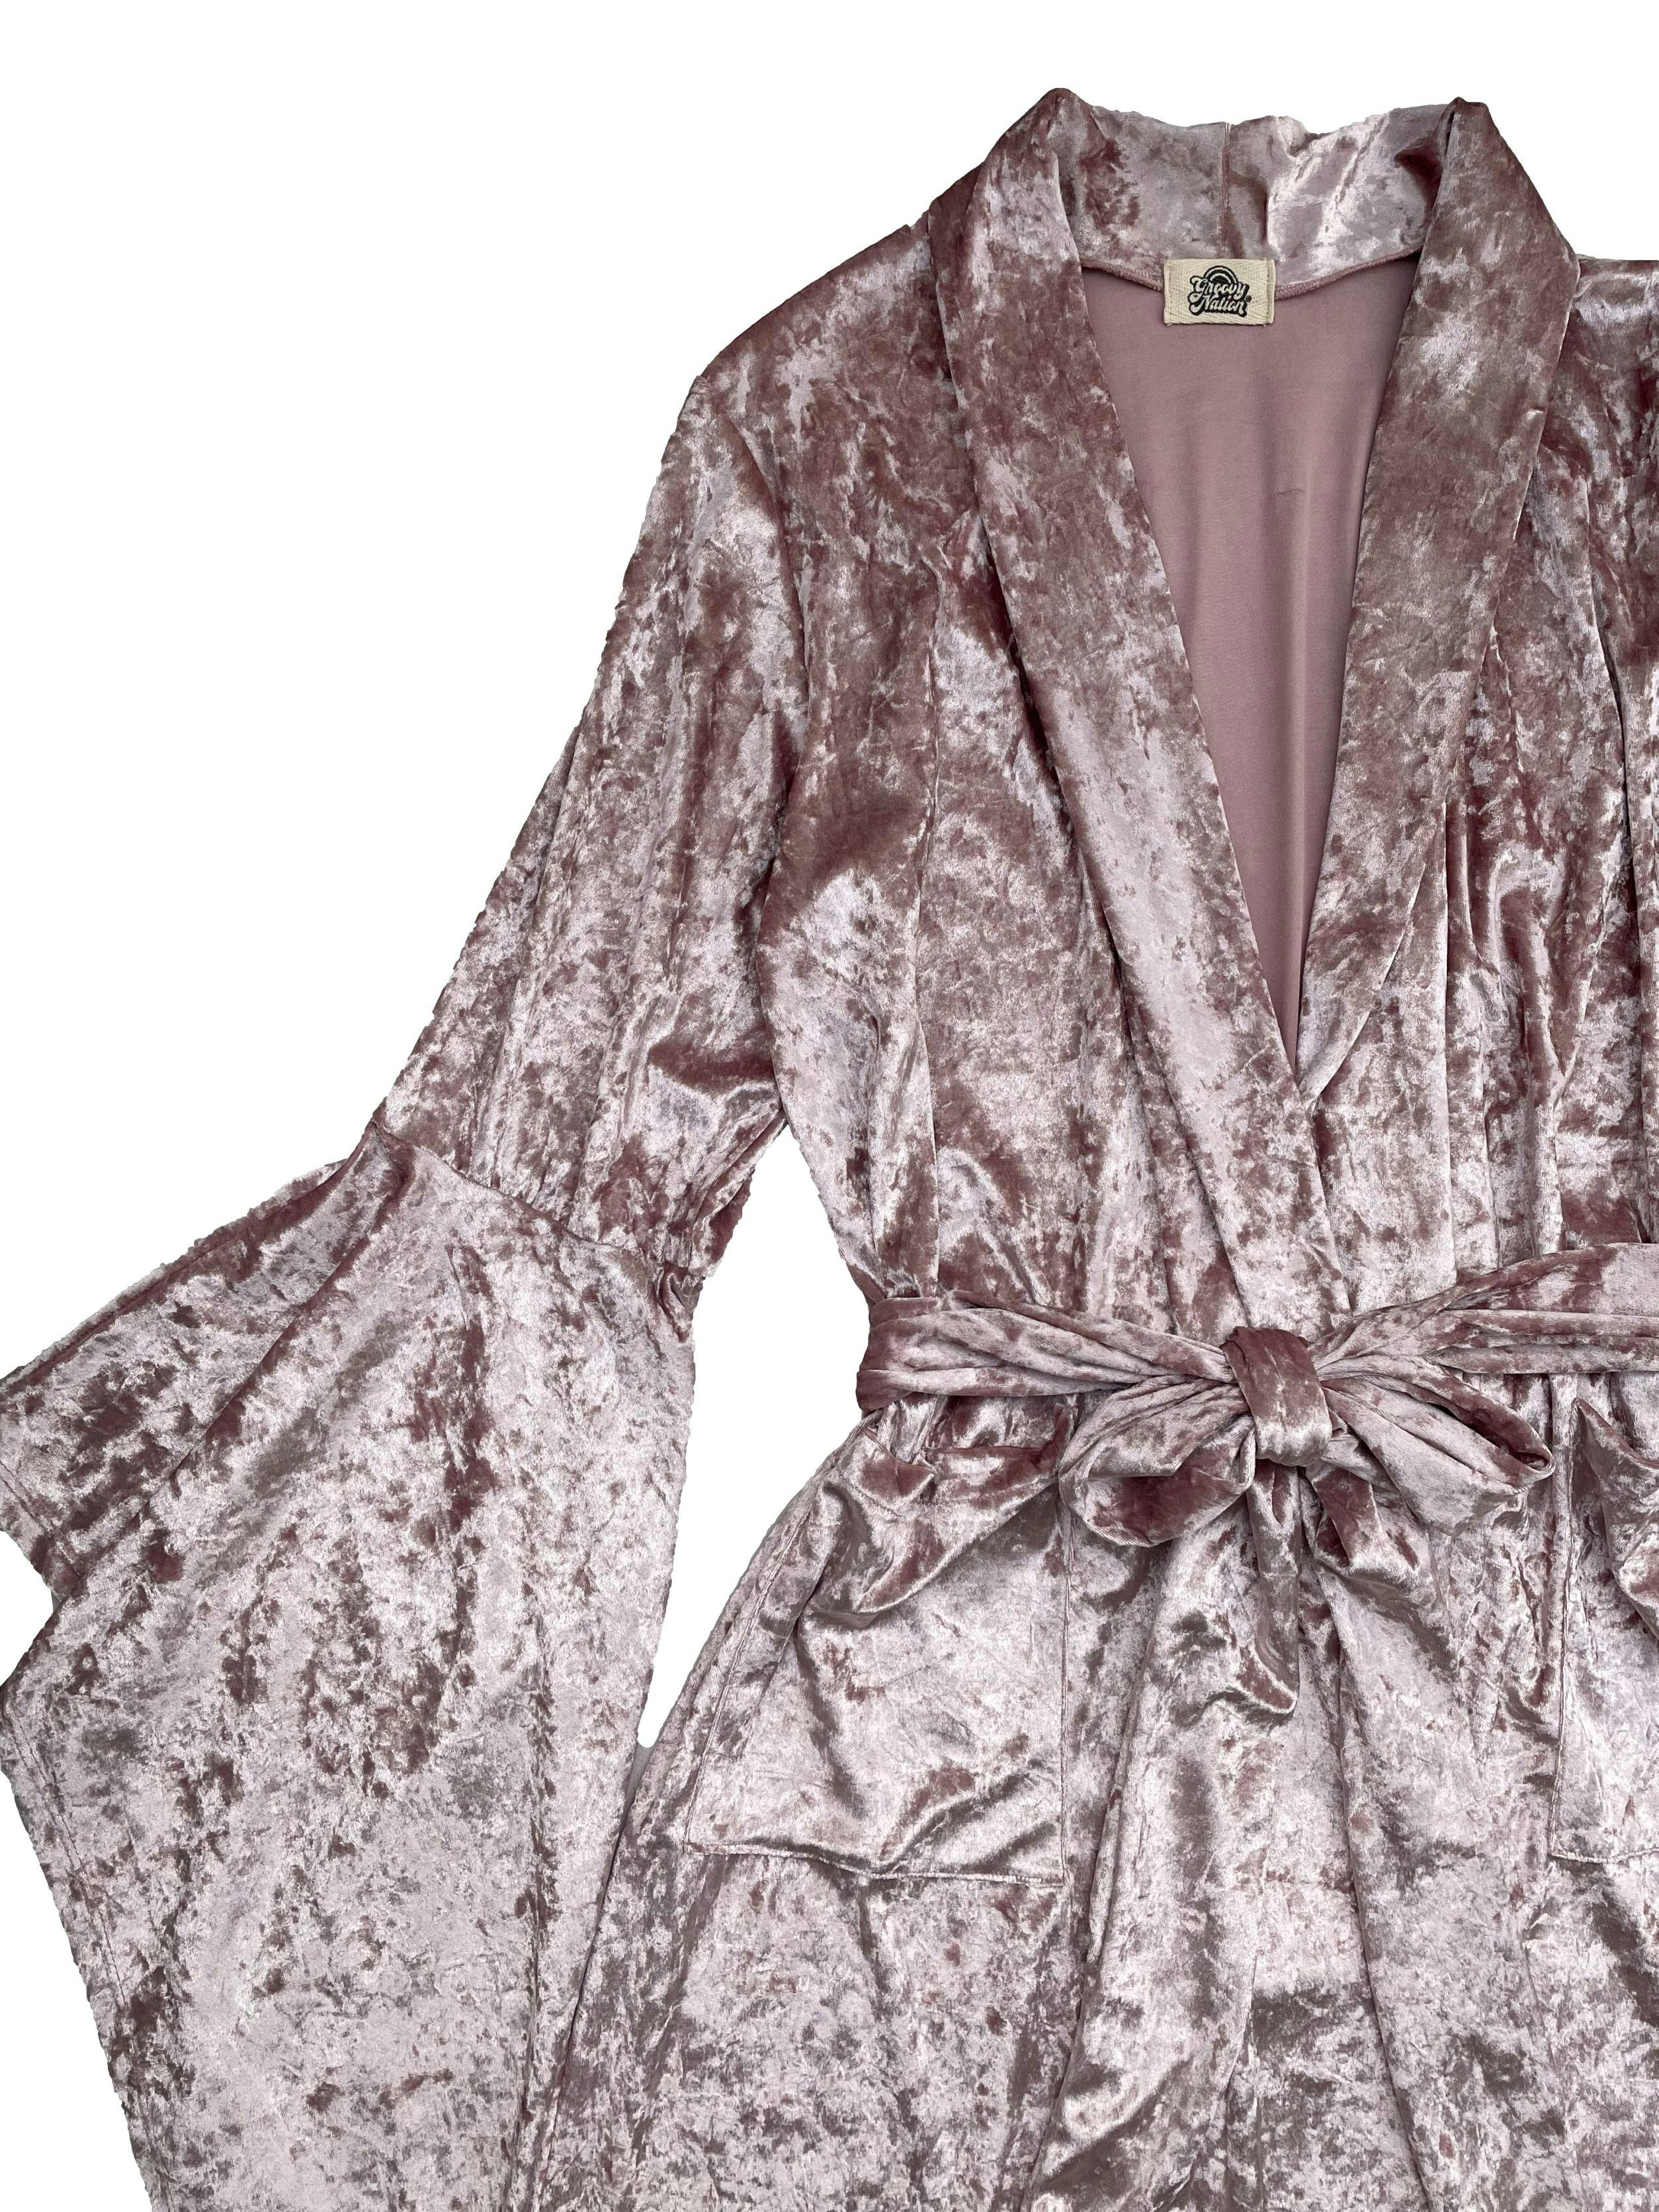 Kimono Groovy Nation de push palo rosa, mangas campana, bolsillos delanteros y cinto para amarrar. Tiene jaladitos internos que no afectan el uso. Largo 120cm. Precio original S/ 209